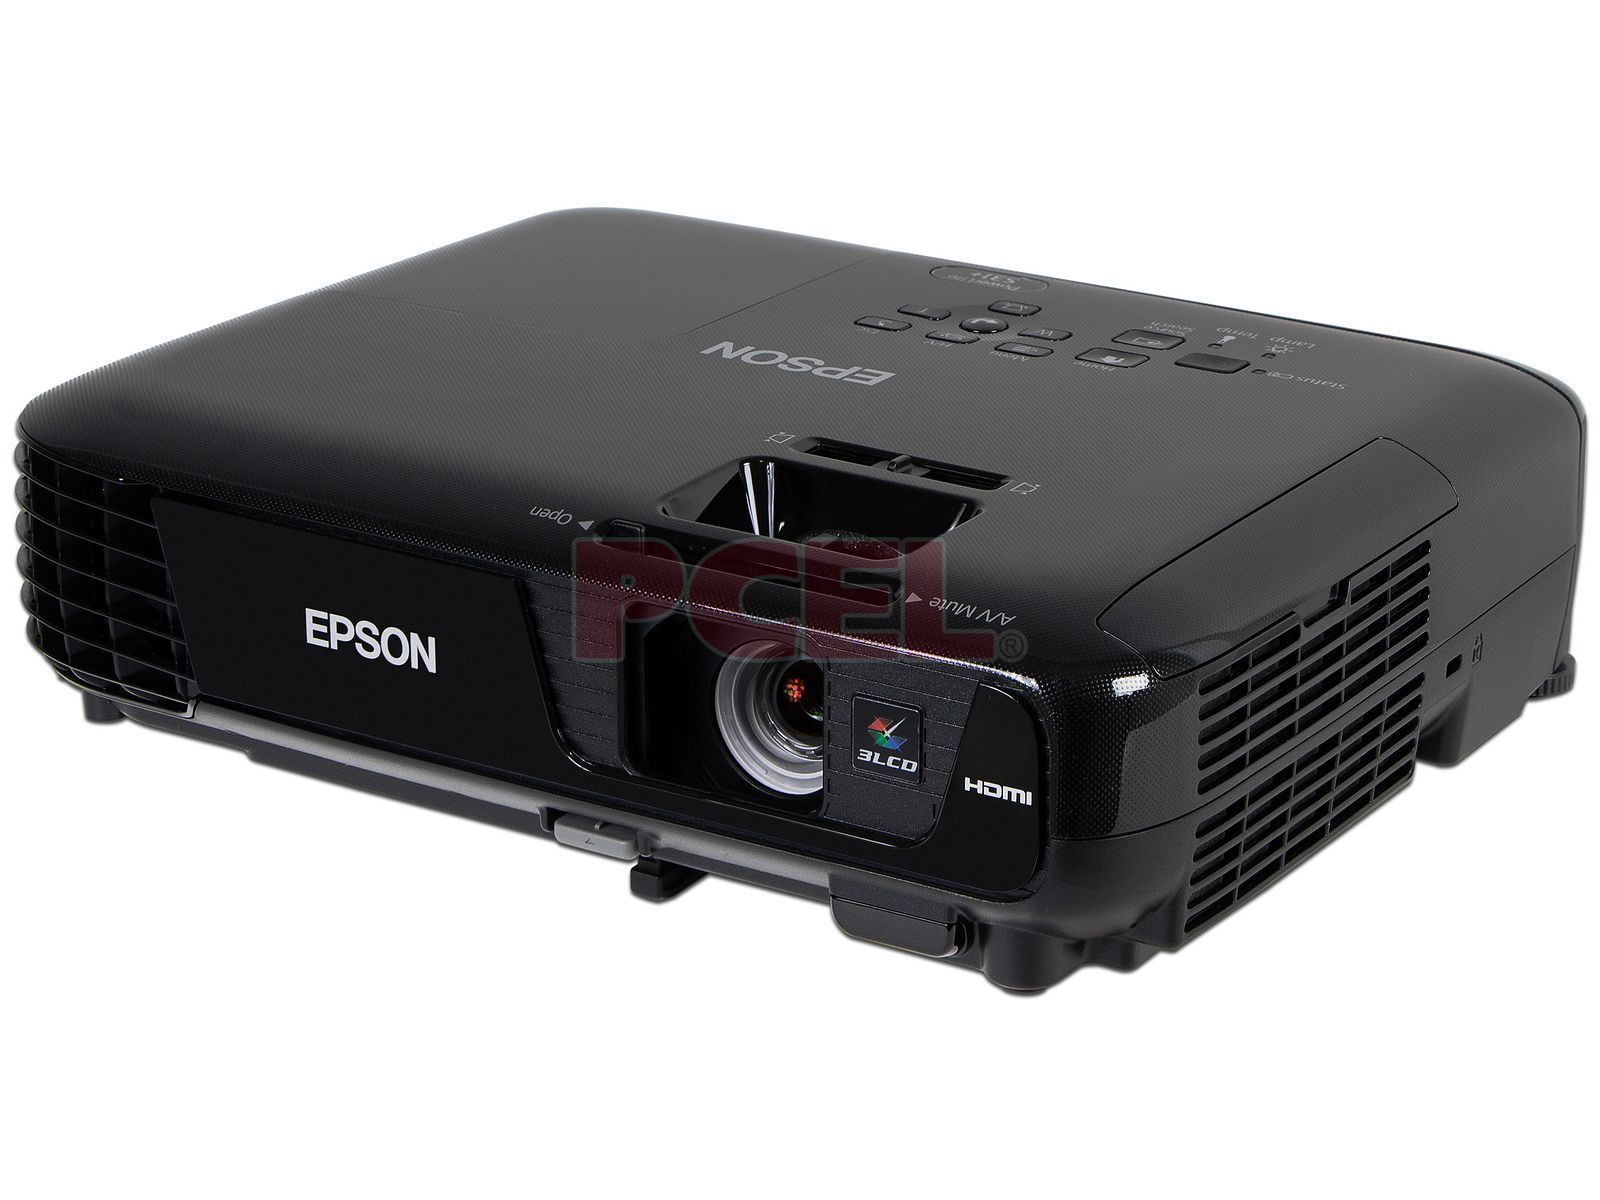 Proyector Epson PowerLite S31+, resolución de 800 x 600, Contraste 15,000:1  y 3,200 ANSI-Lumens.